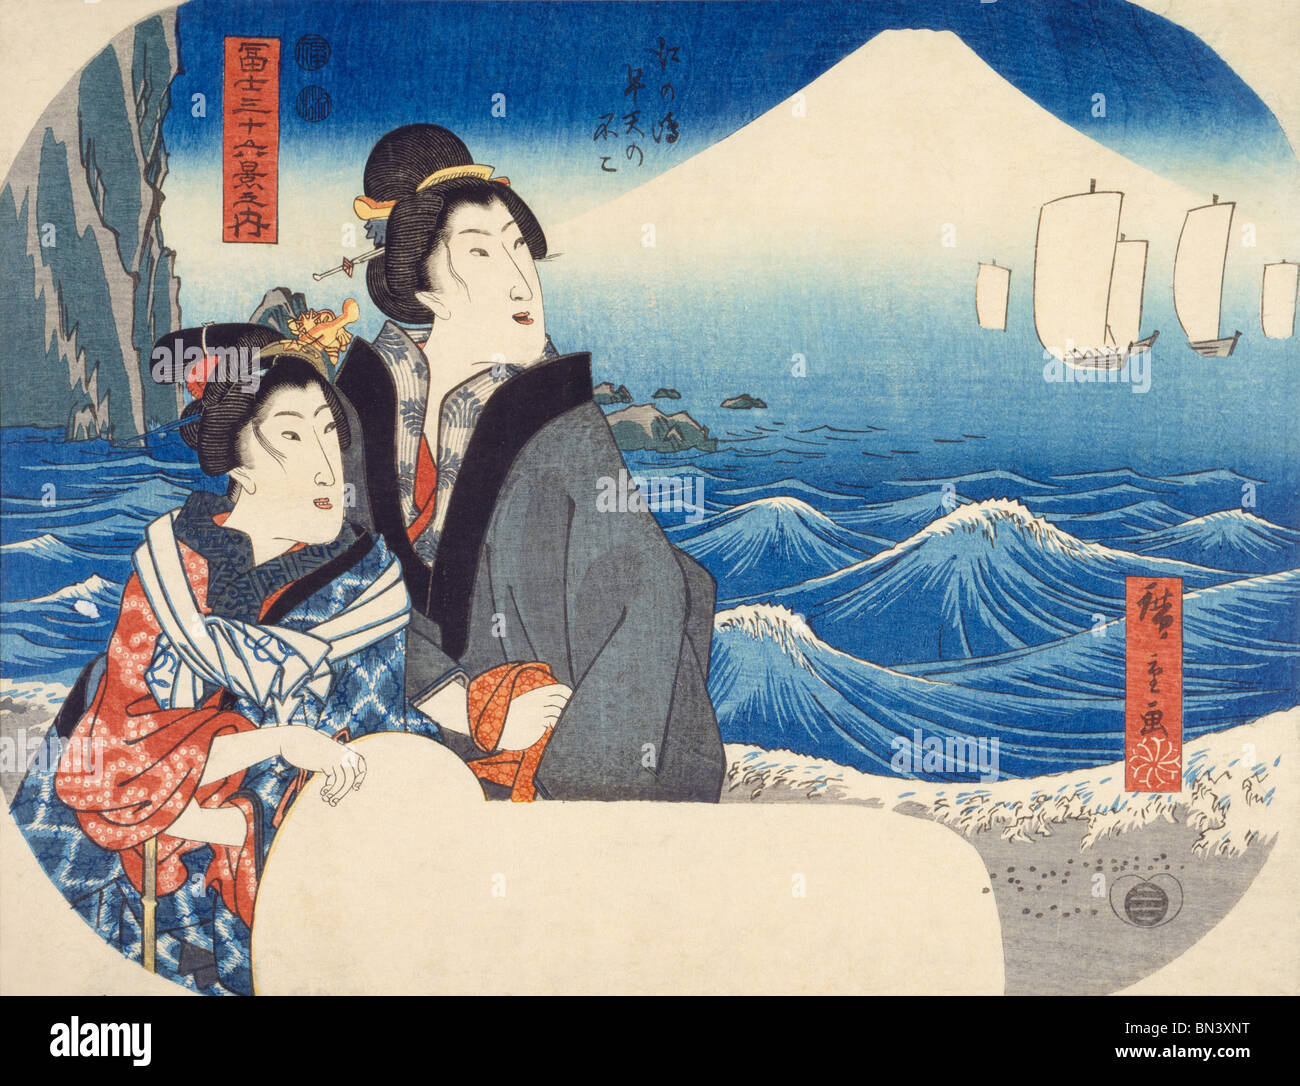 Il monte Fuji visto all'alba dall' isola di Enoshima, da Utagawa Hiroshige I. Giappone, di mid-19th cnetury Foto Stock